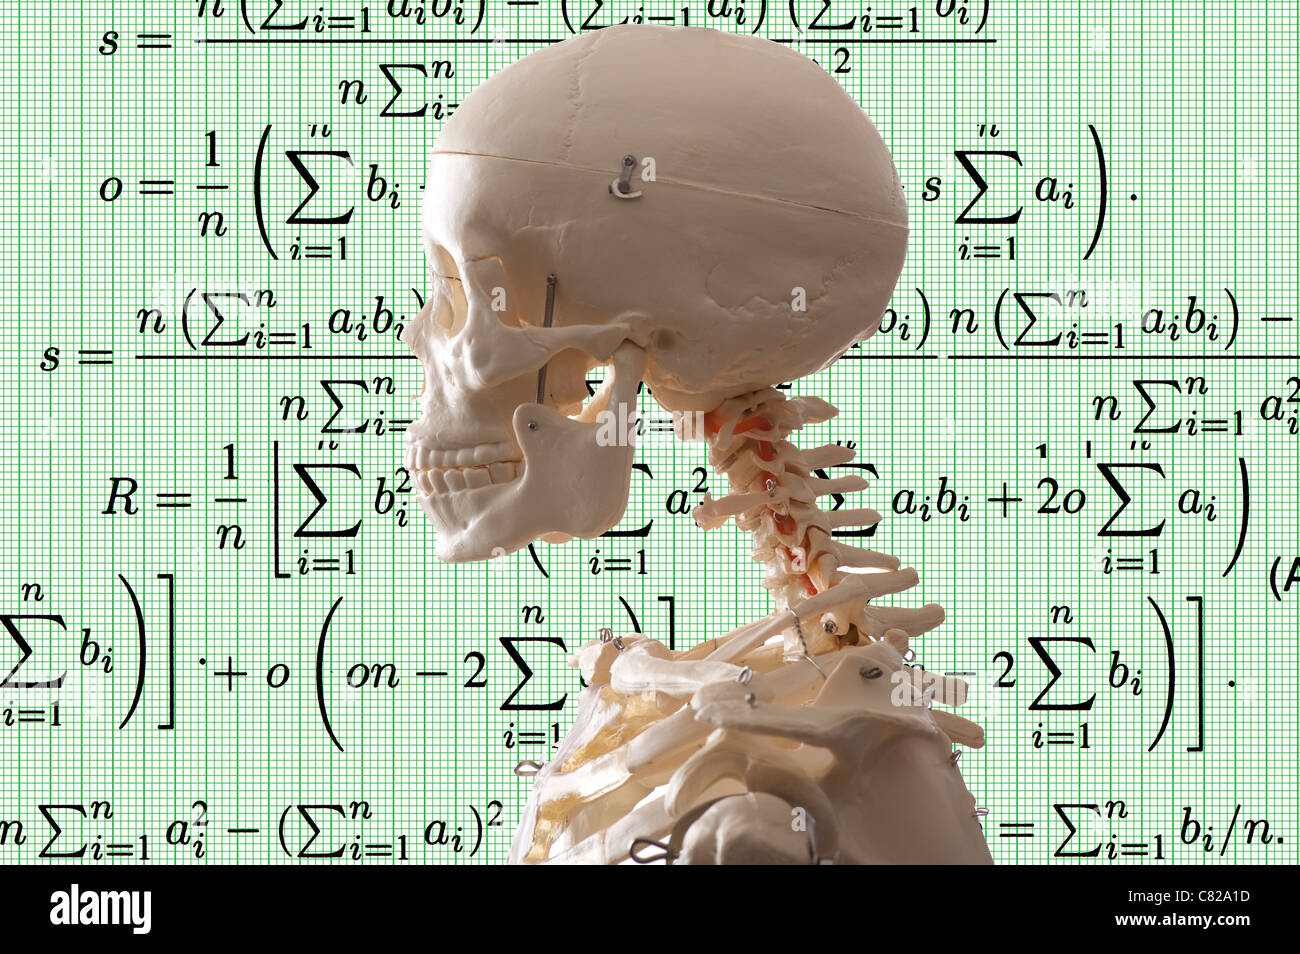 Concepto de esqueleto de la imagen de fondo y símbolos matemáticos Foto de stock